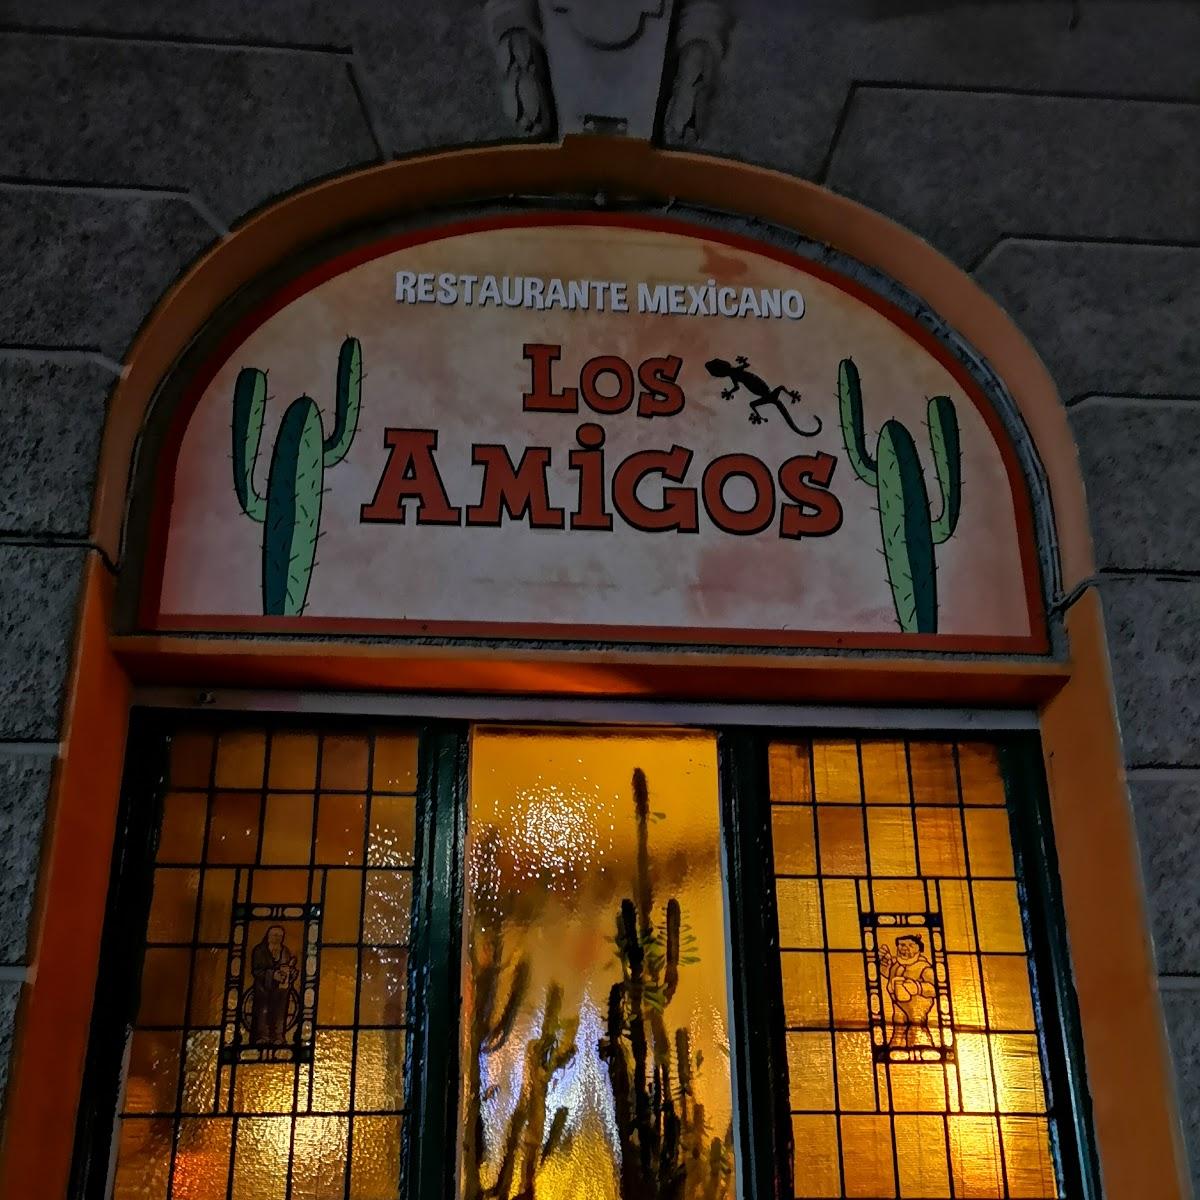 Restaurant "Los Amigos" in Mönchengladbach